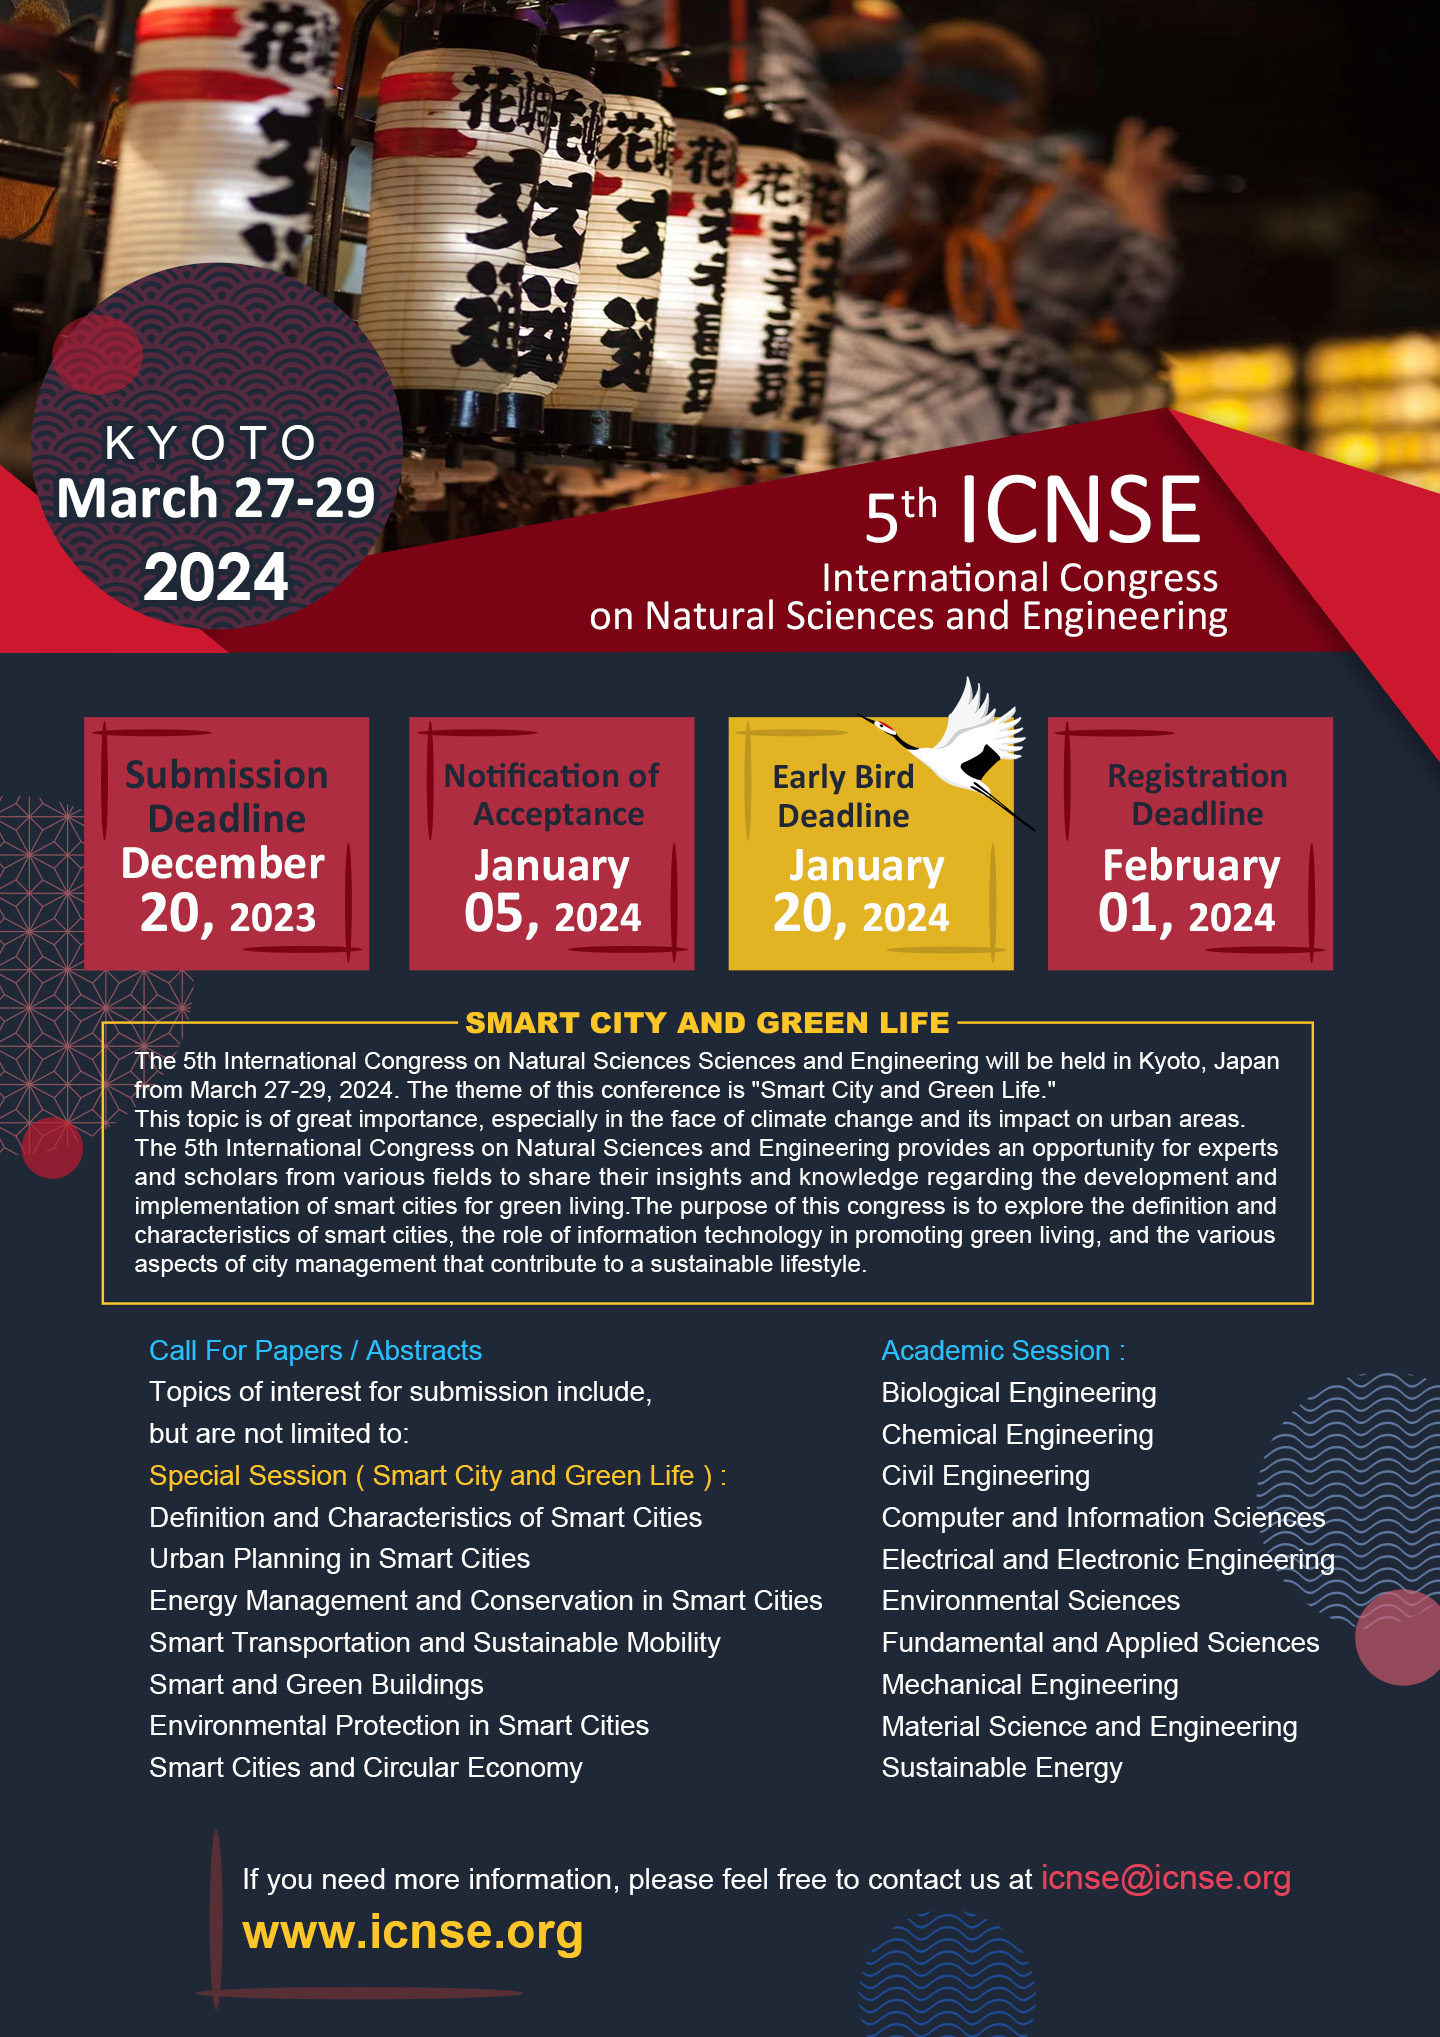 5th ICNSE at KYOTO, JAPAN International Congress on Natural Sciences and Engineering, Kyoto, Kansai, Japan